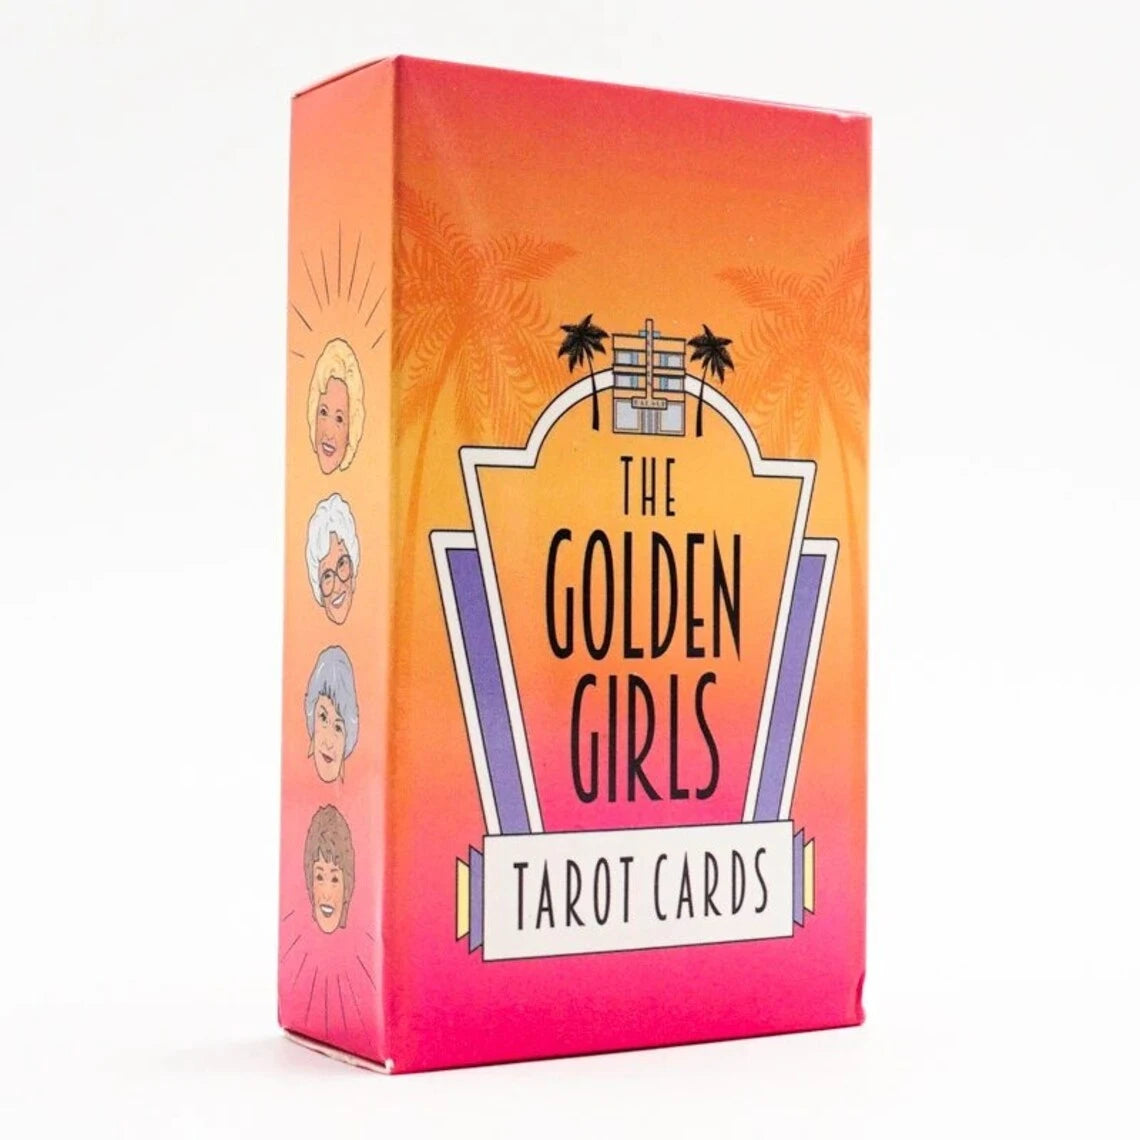 The Golden Girls Tarot Cards Deck